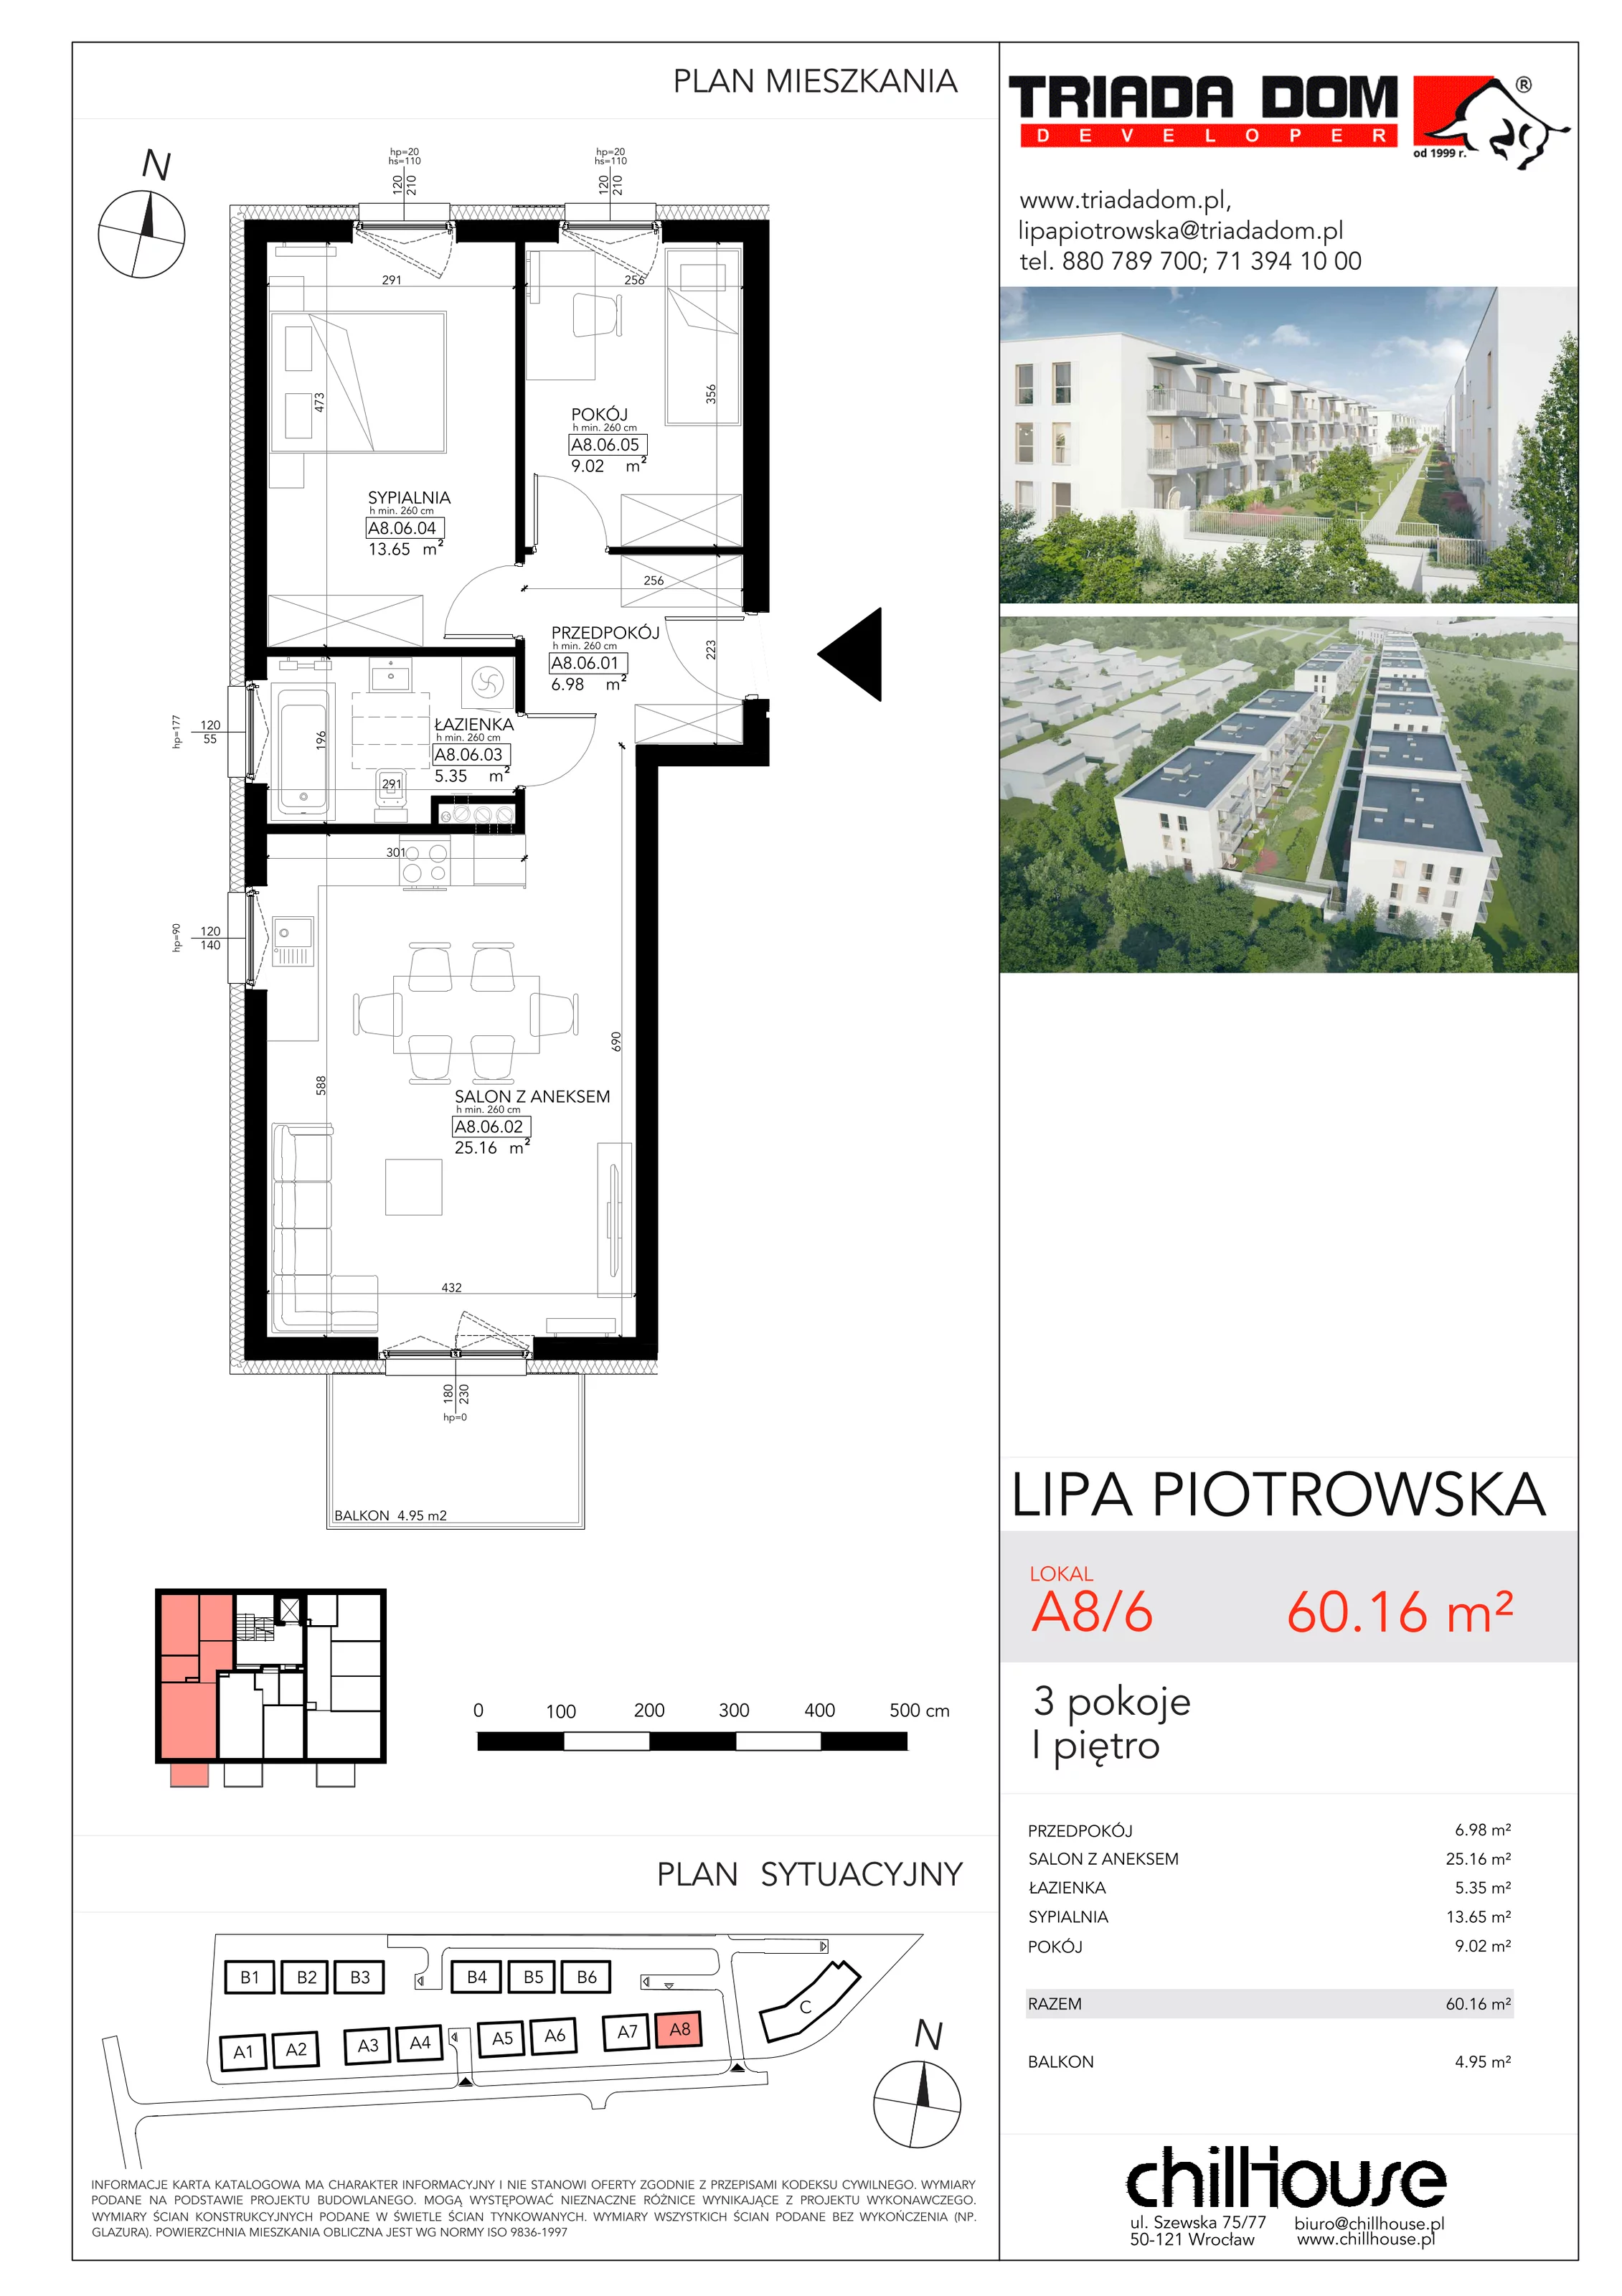 Mieszkanie 60,16 m², piętro 1, oferta nr A86, Lipa Piotrowska, Wrocław, Lipa Piotrowska, ul. Lawendowa / Melisowa